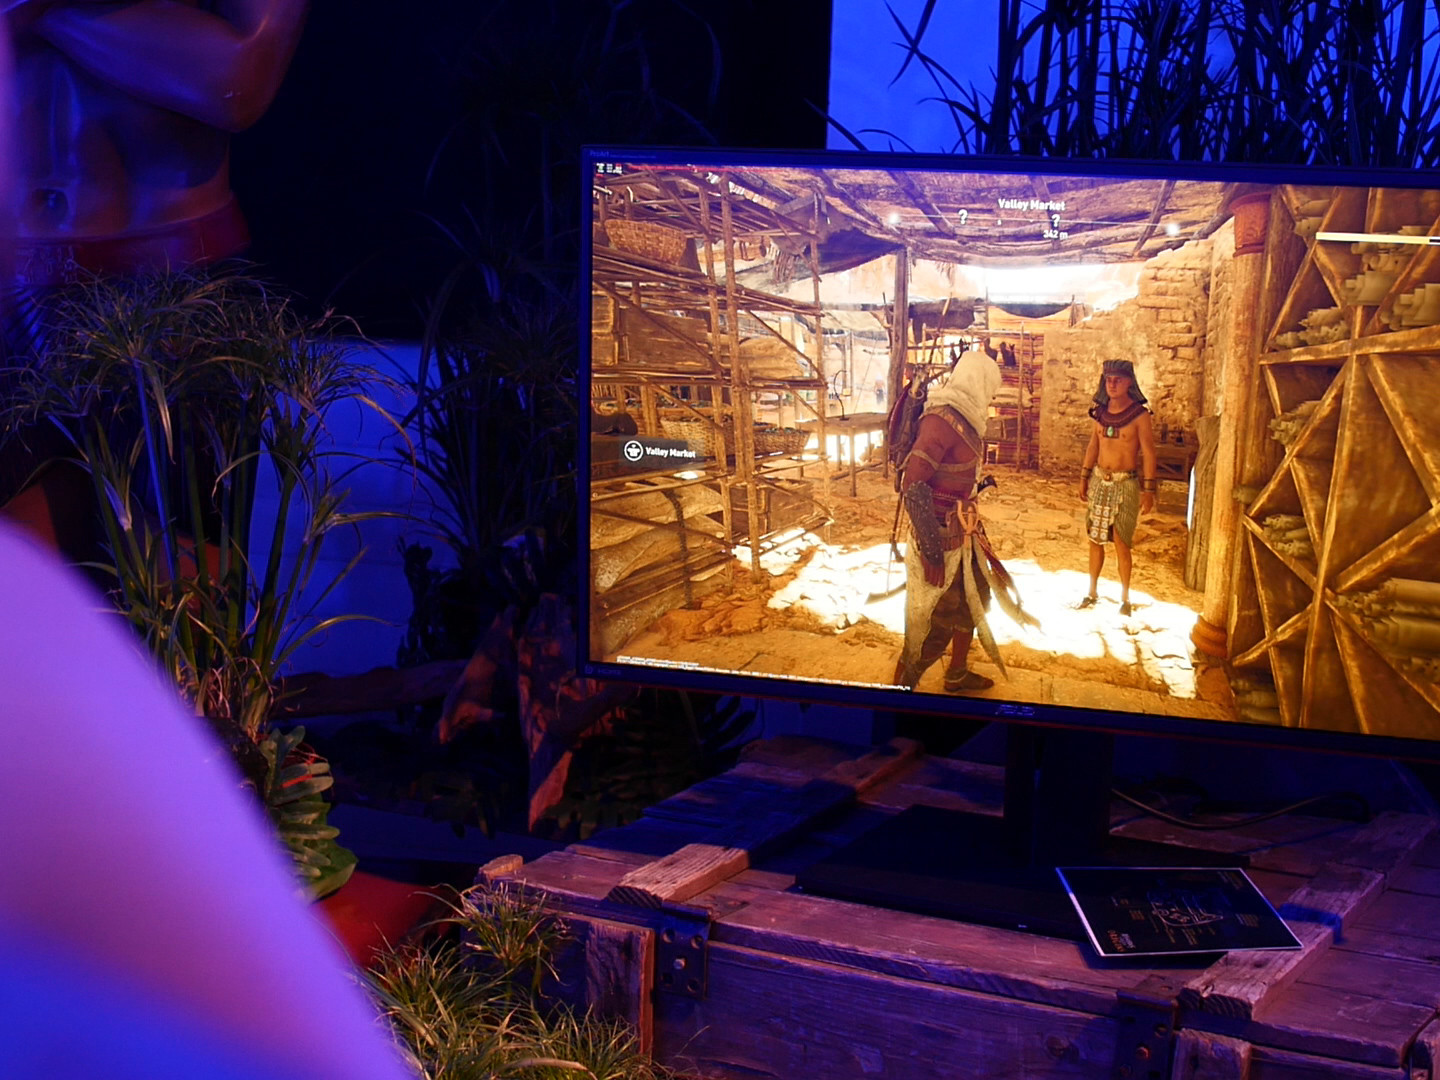 Auf einem Bildschirm, der auf einer antiken Holztruhe steht, laeuft ein Computerspiel